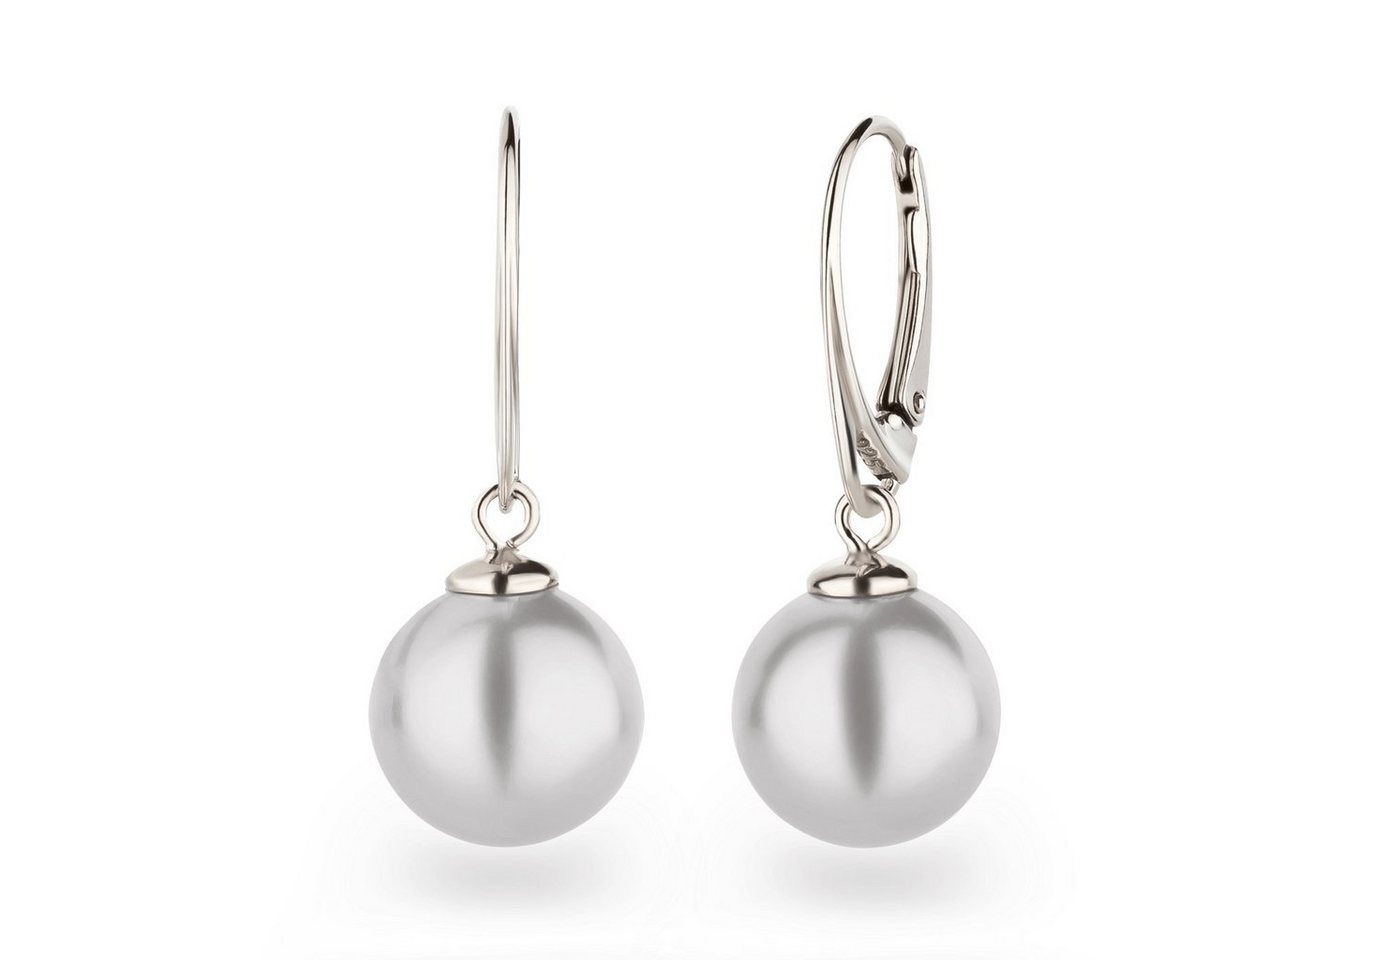 Schöner-SD Paar Ohrhänger mit Perle 12mm groß Perlenohrringe hängend, 925 Sterling Silber, Hänger von Schöner-SD